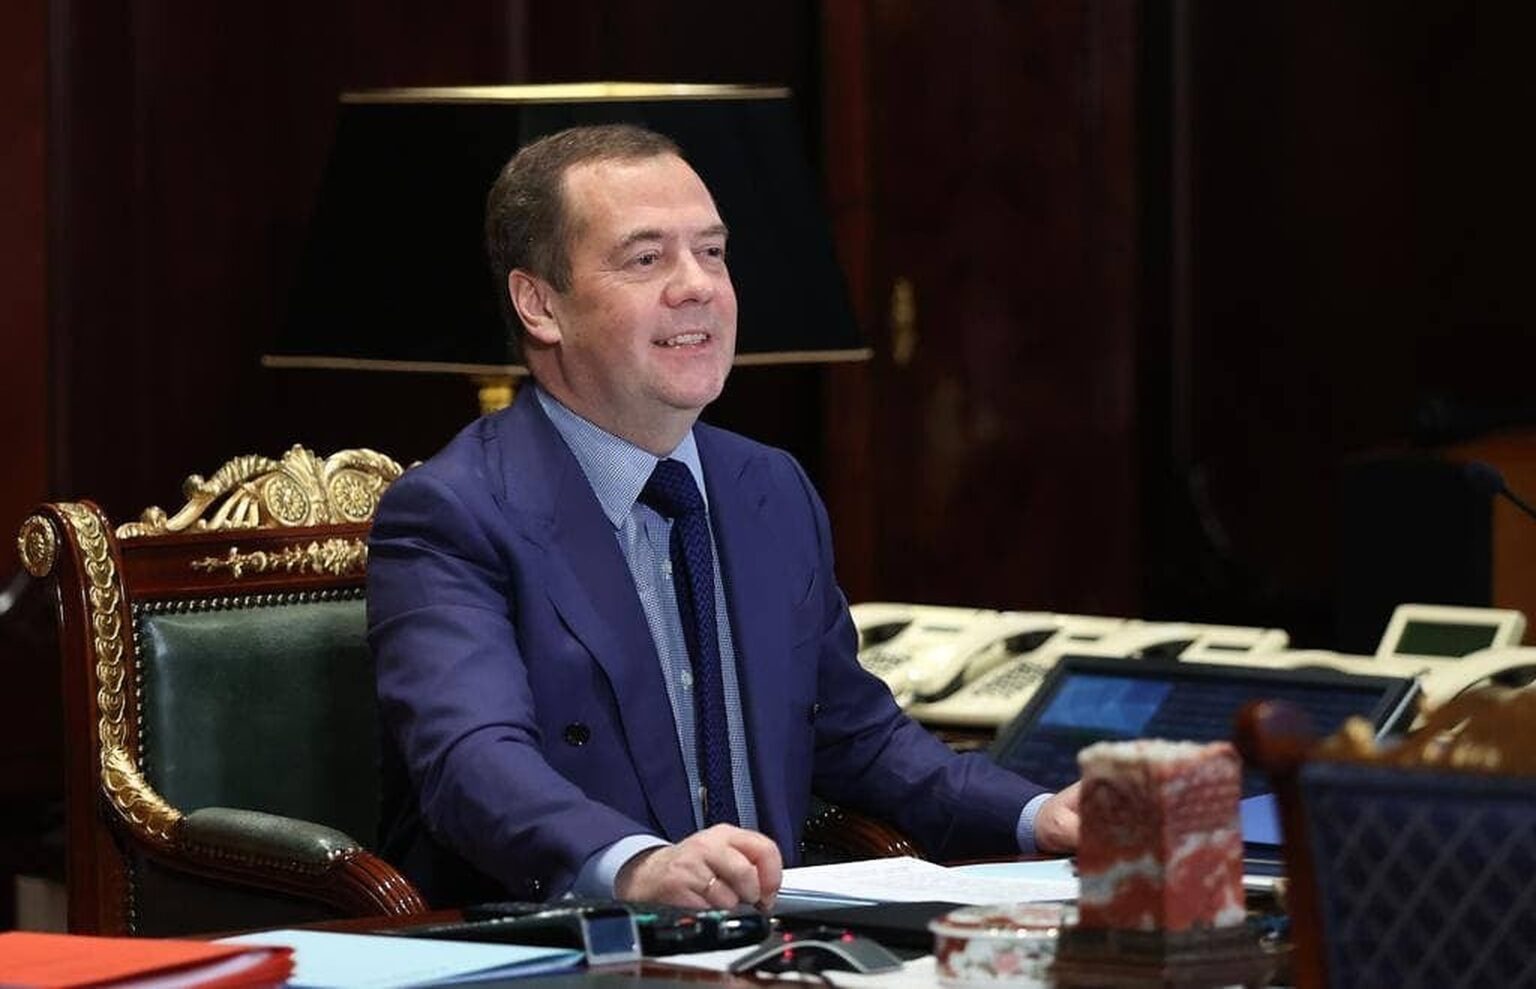 Declarație fulminată: ”Rusia nu oprește războiul nici dacă Ucraina renunță la NATO”, a spus fostul președinte rus Medvedev